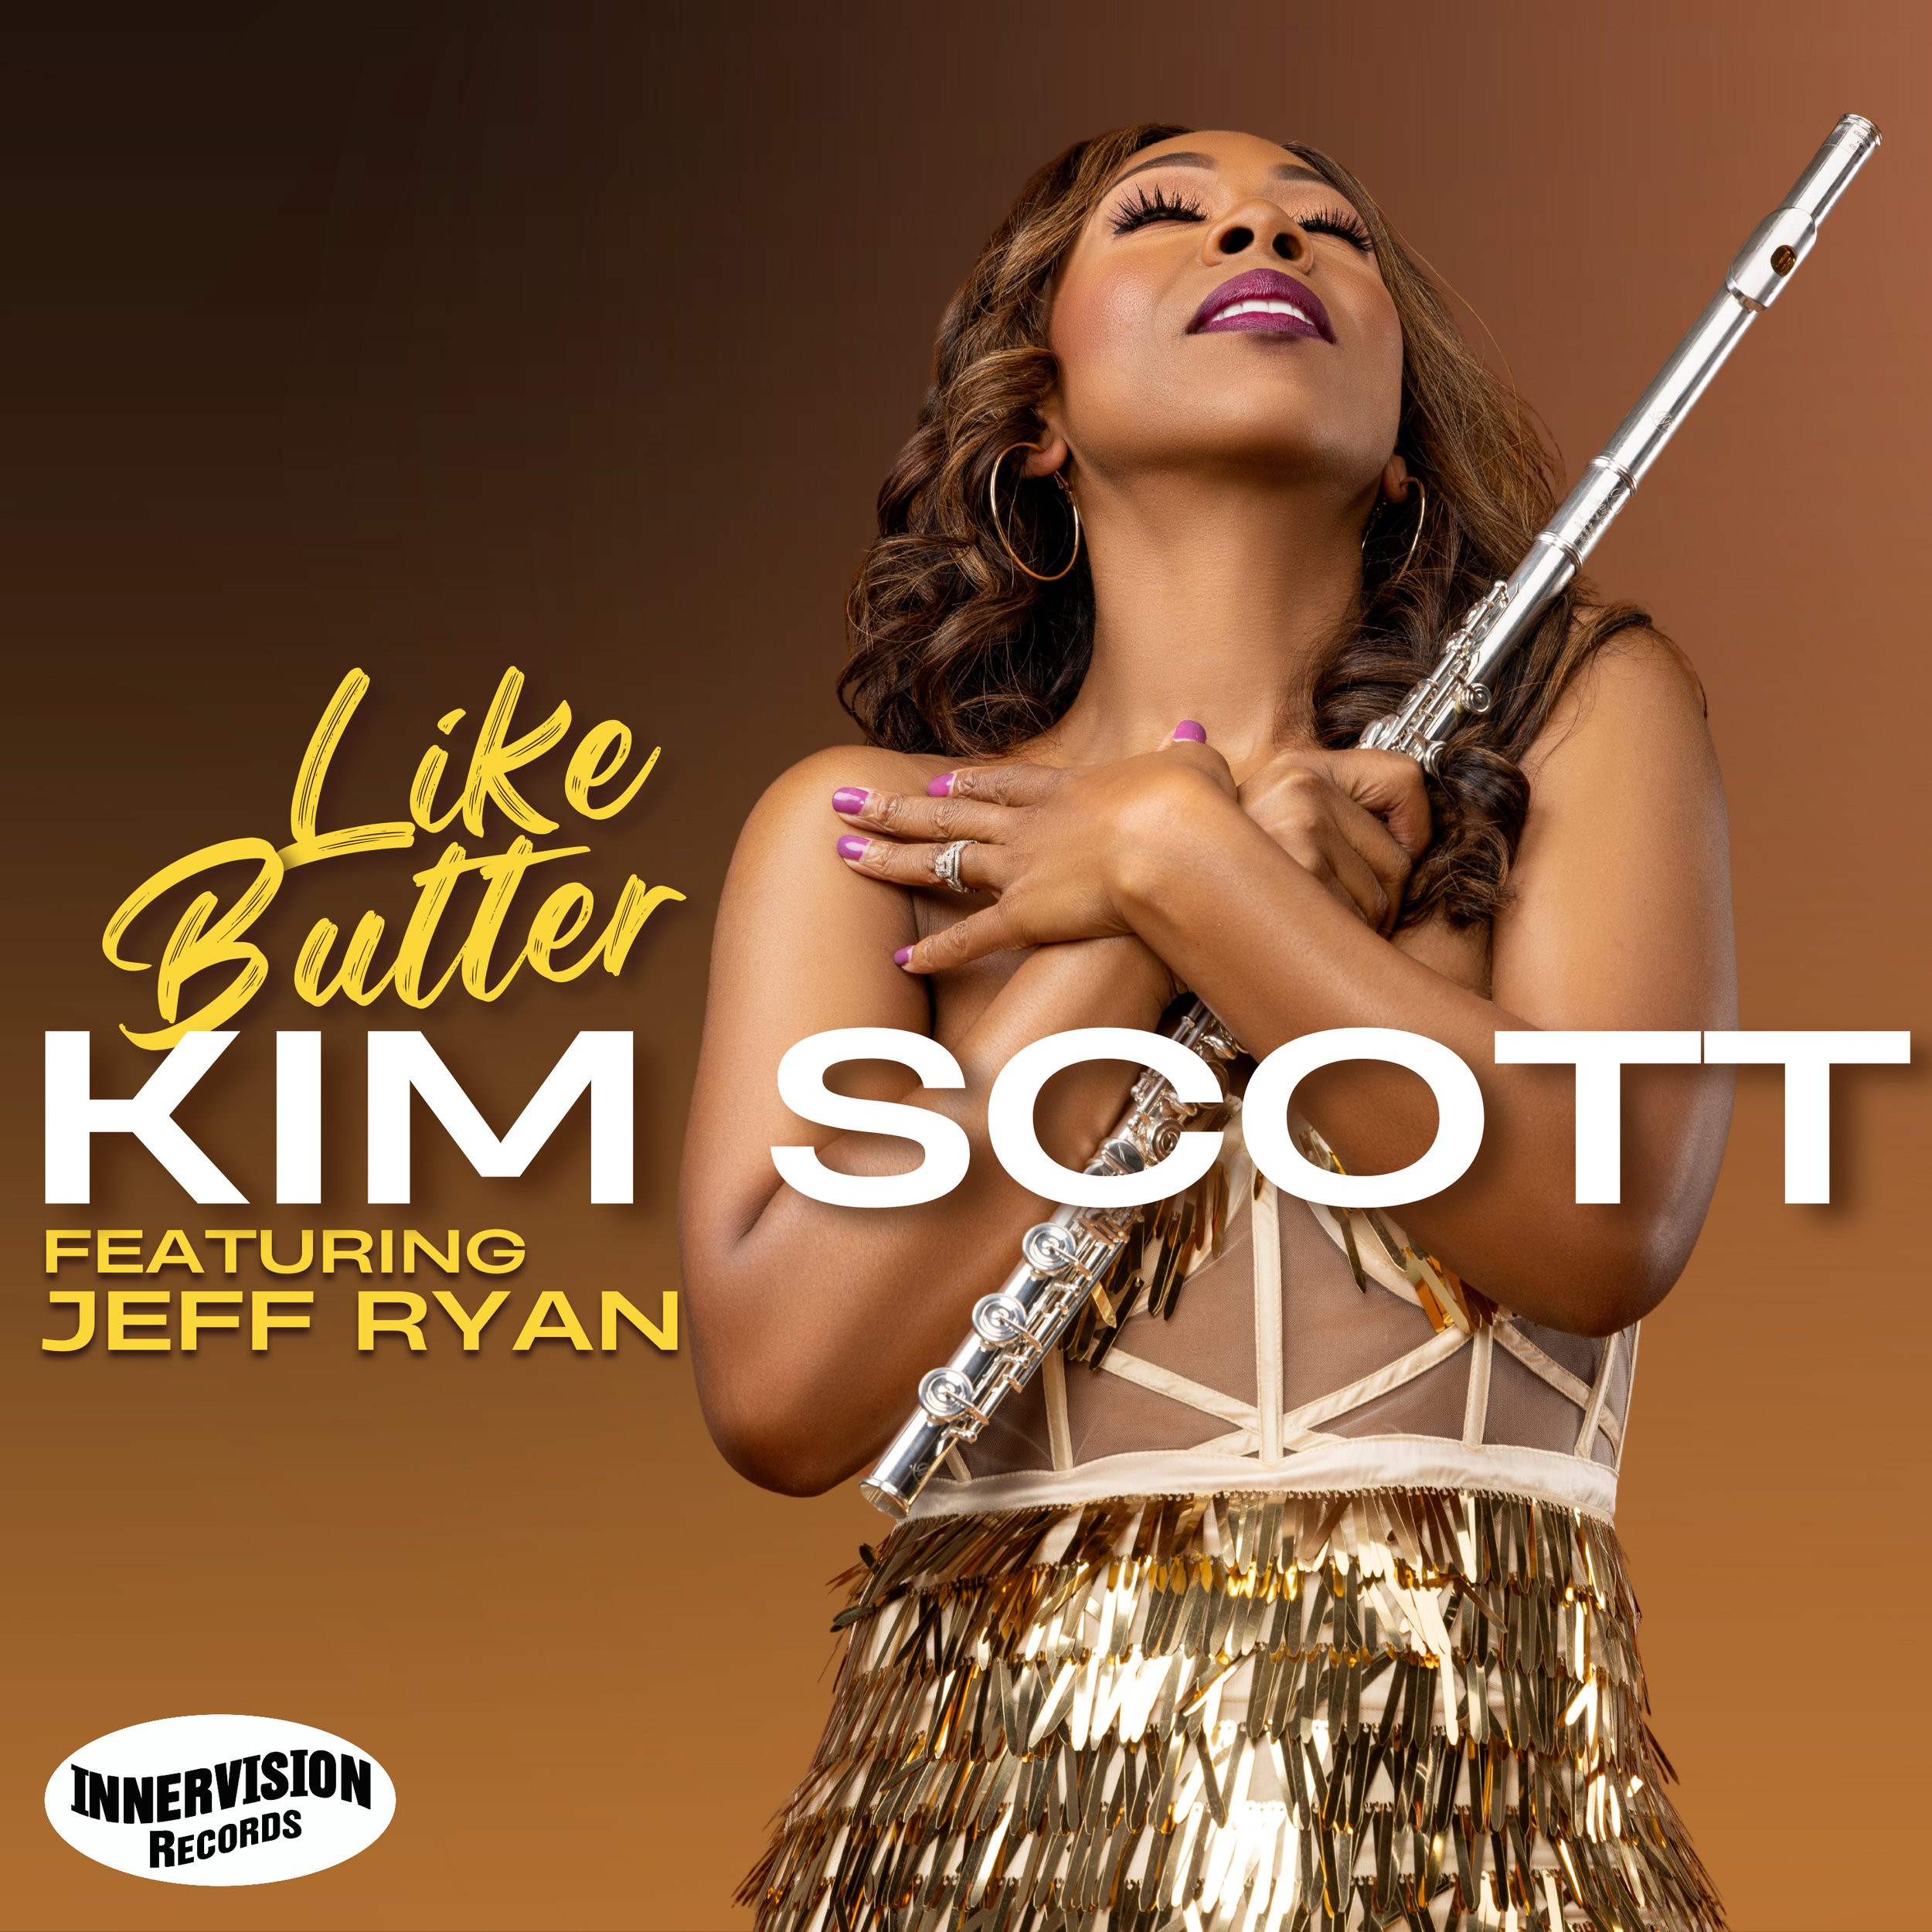 Kim Scott - Like Butter - Cover Art FINAL.jpg